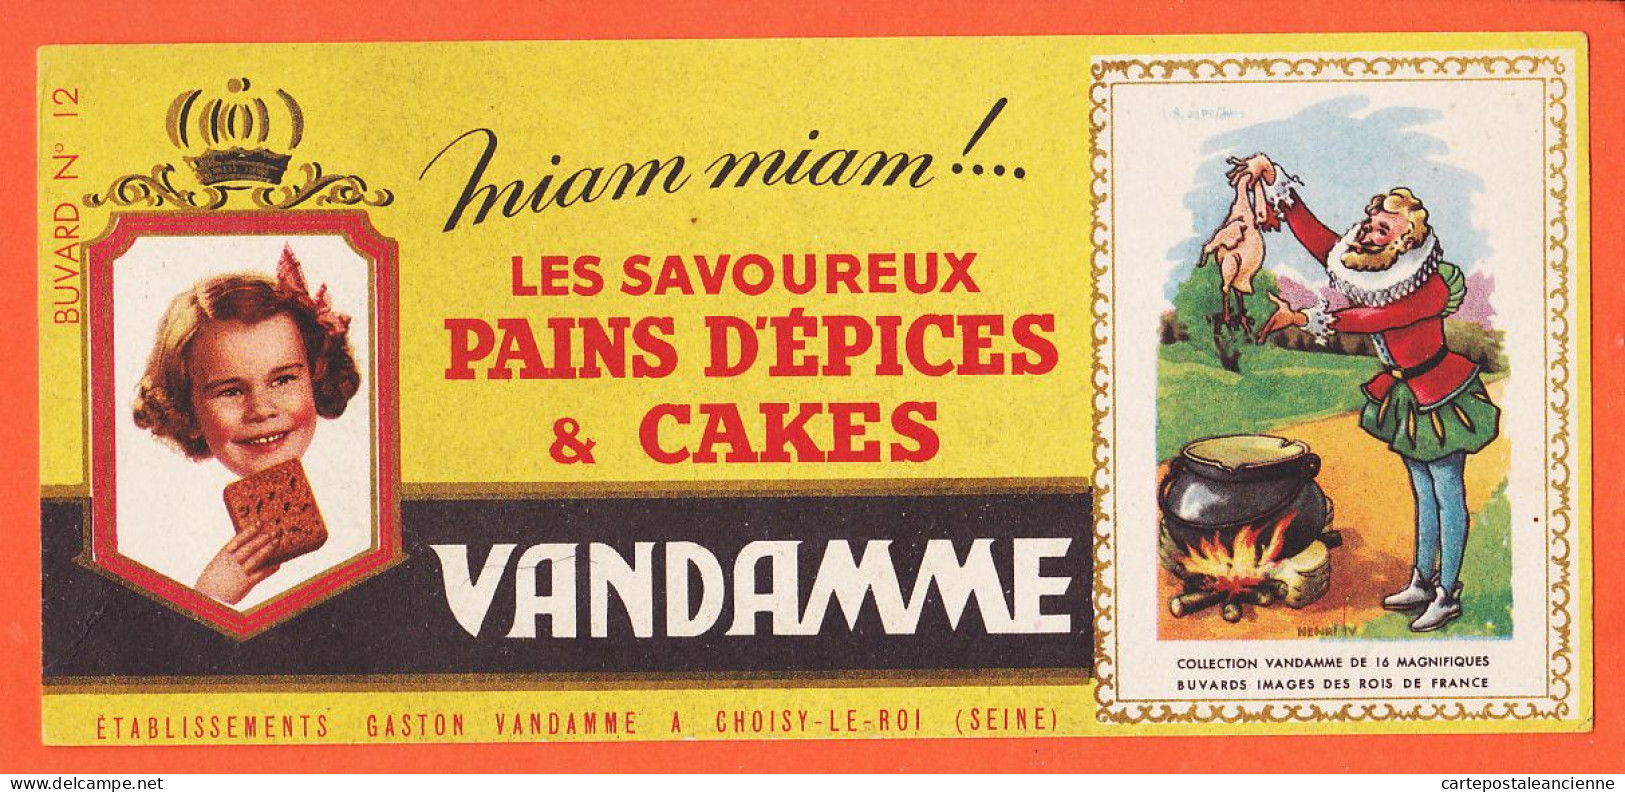 06185 / Pains Epices Cakes VANDAMME Miam ! Miam Etablissements Gaston Vandamme Choisy-Le-Roi Buvard-Blotter N° 12 - Pain D'épices